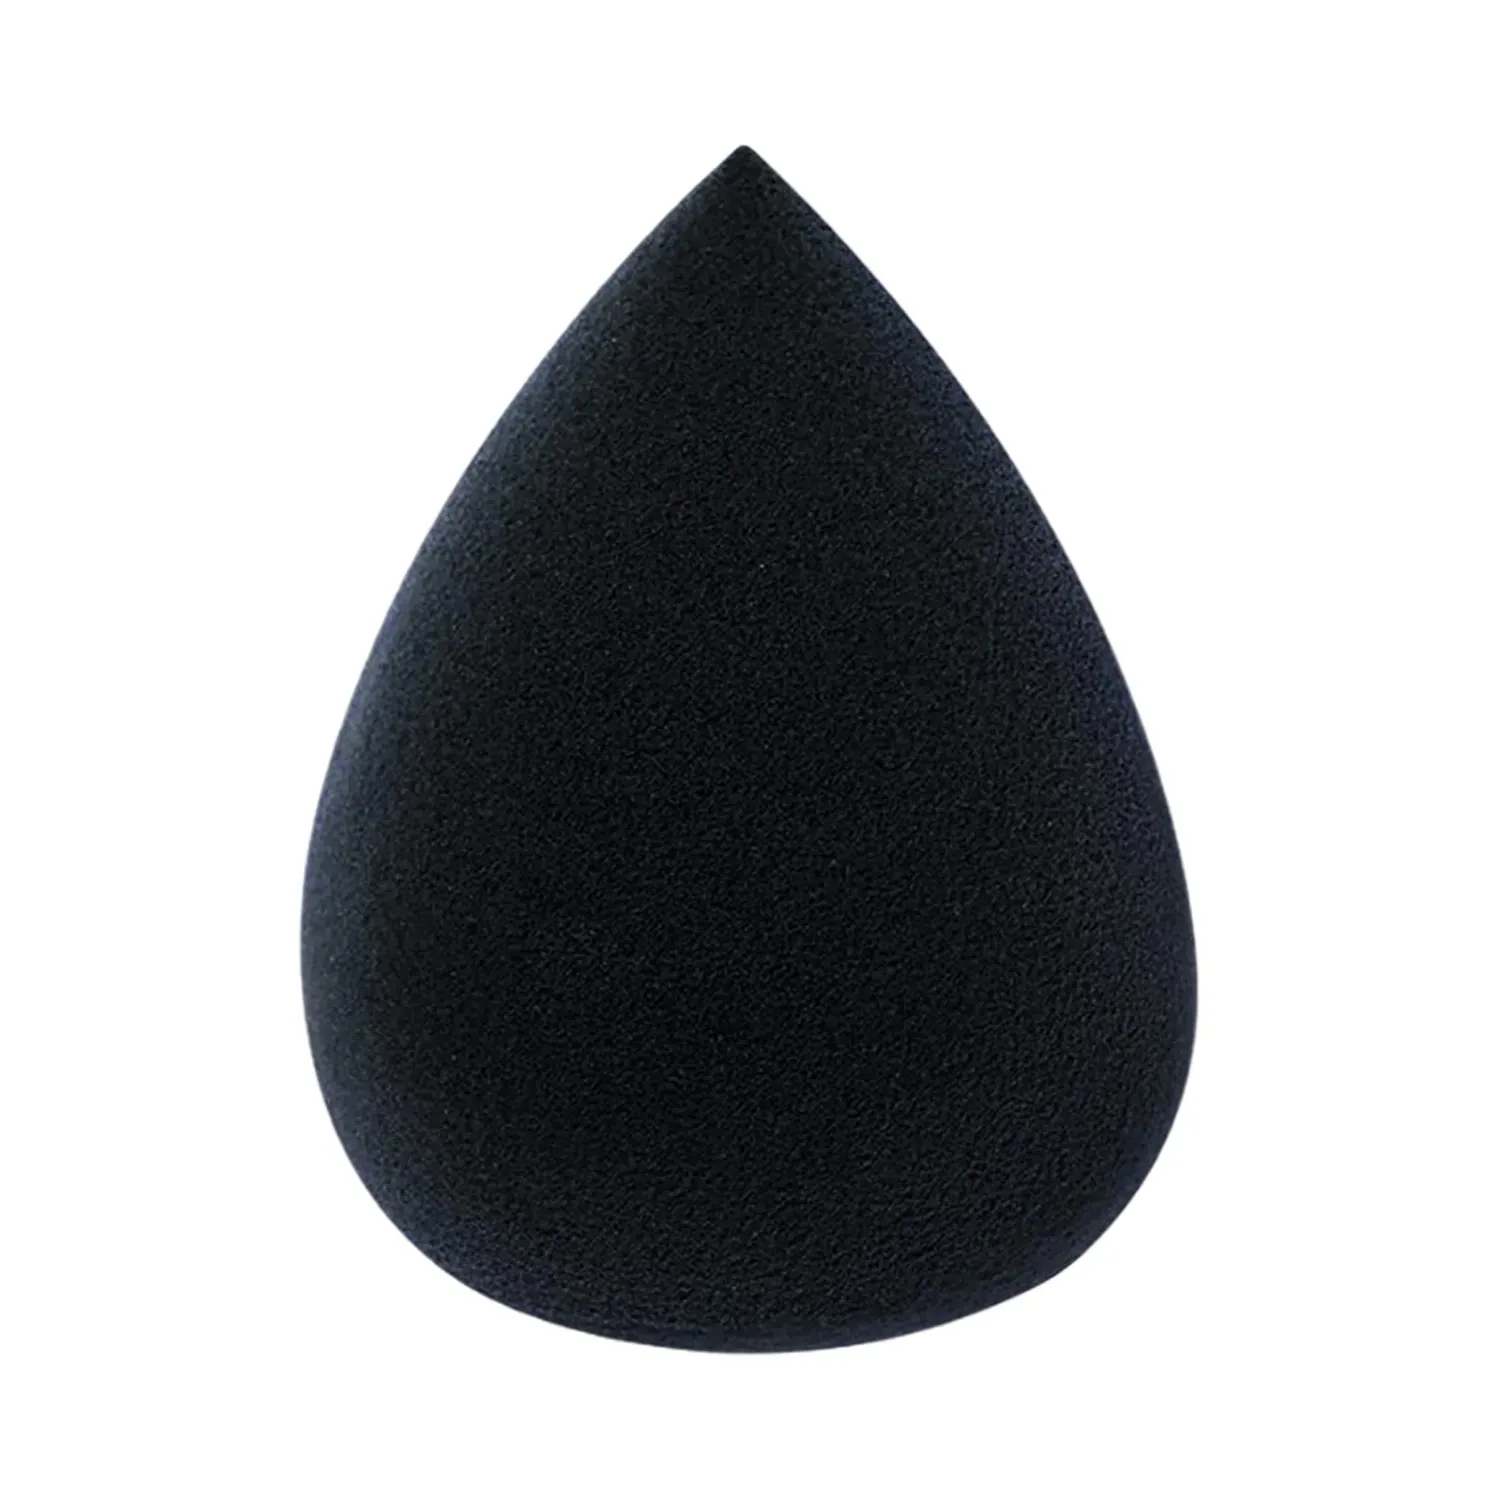 Bronson Professional | Bronson Professional Tear Drop Beauty Blender Sponge (Black)